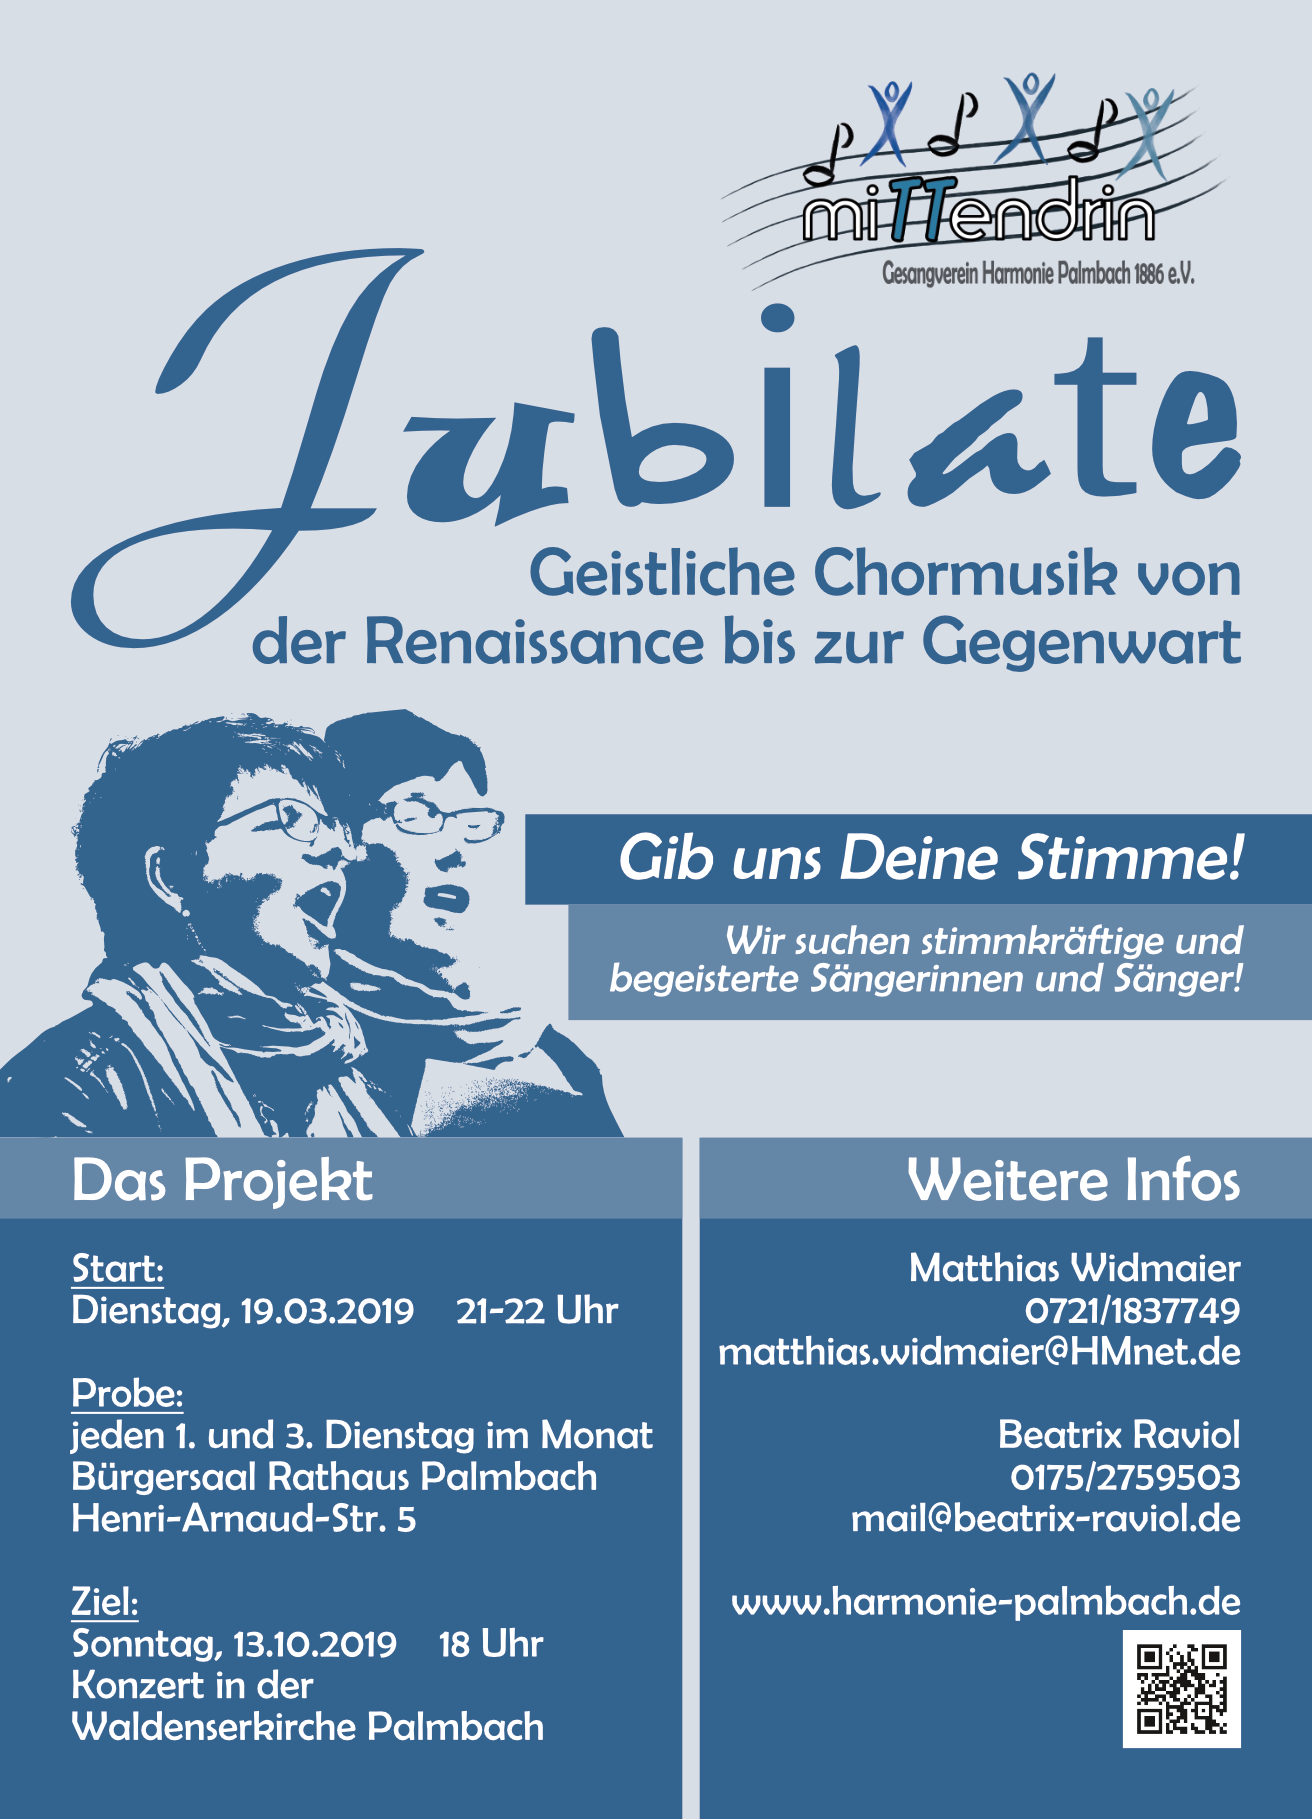 Jubilate - Geistliche Chormusik von der Renaissance bis zur Gegenwart